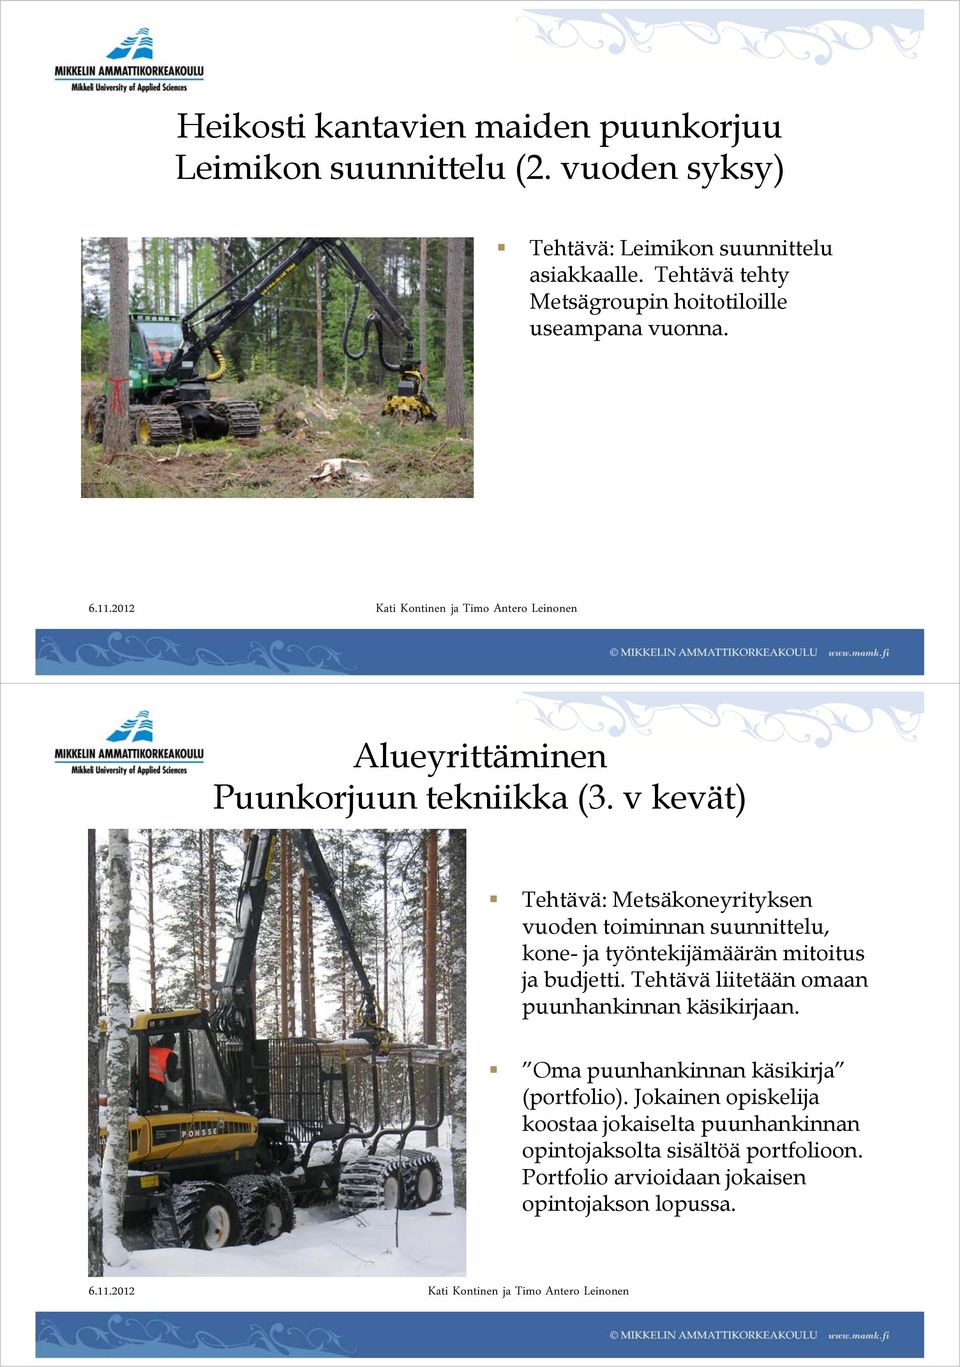 v kevät) Tehtävä: Metsäkoneyrityksen vuoden toiminnan suunnittelu, kone- ja työntekijämäärän mitoitus ja budjetti.